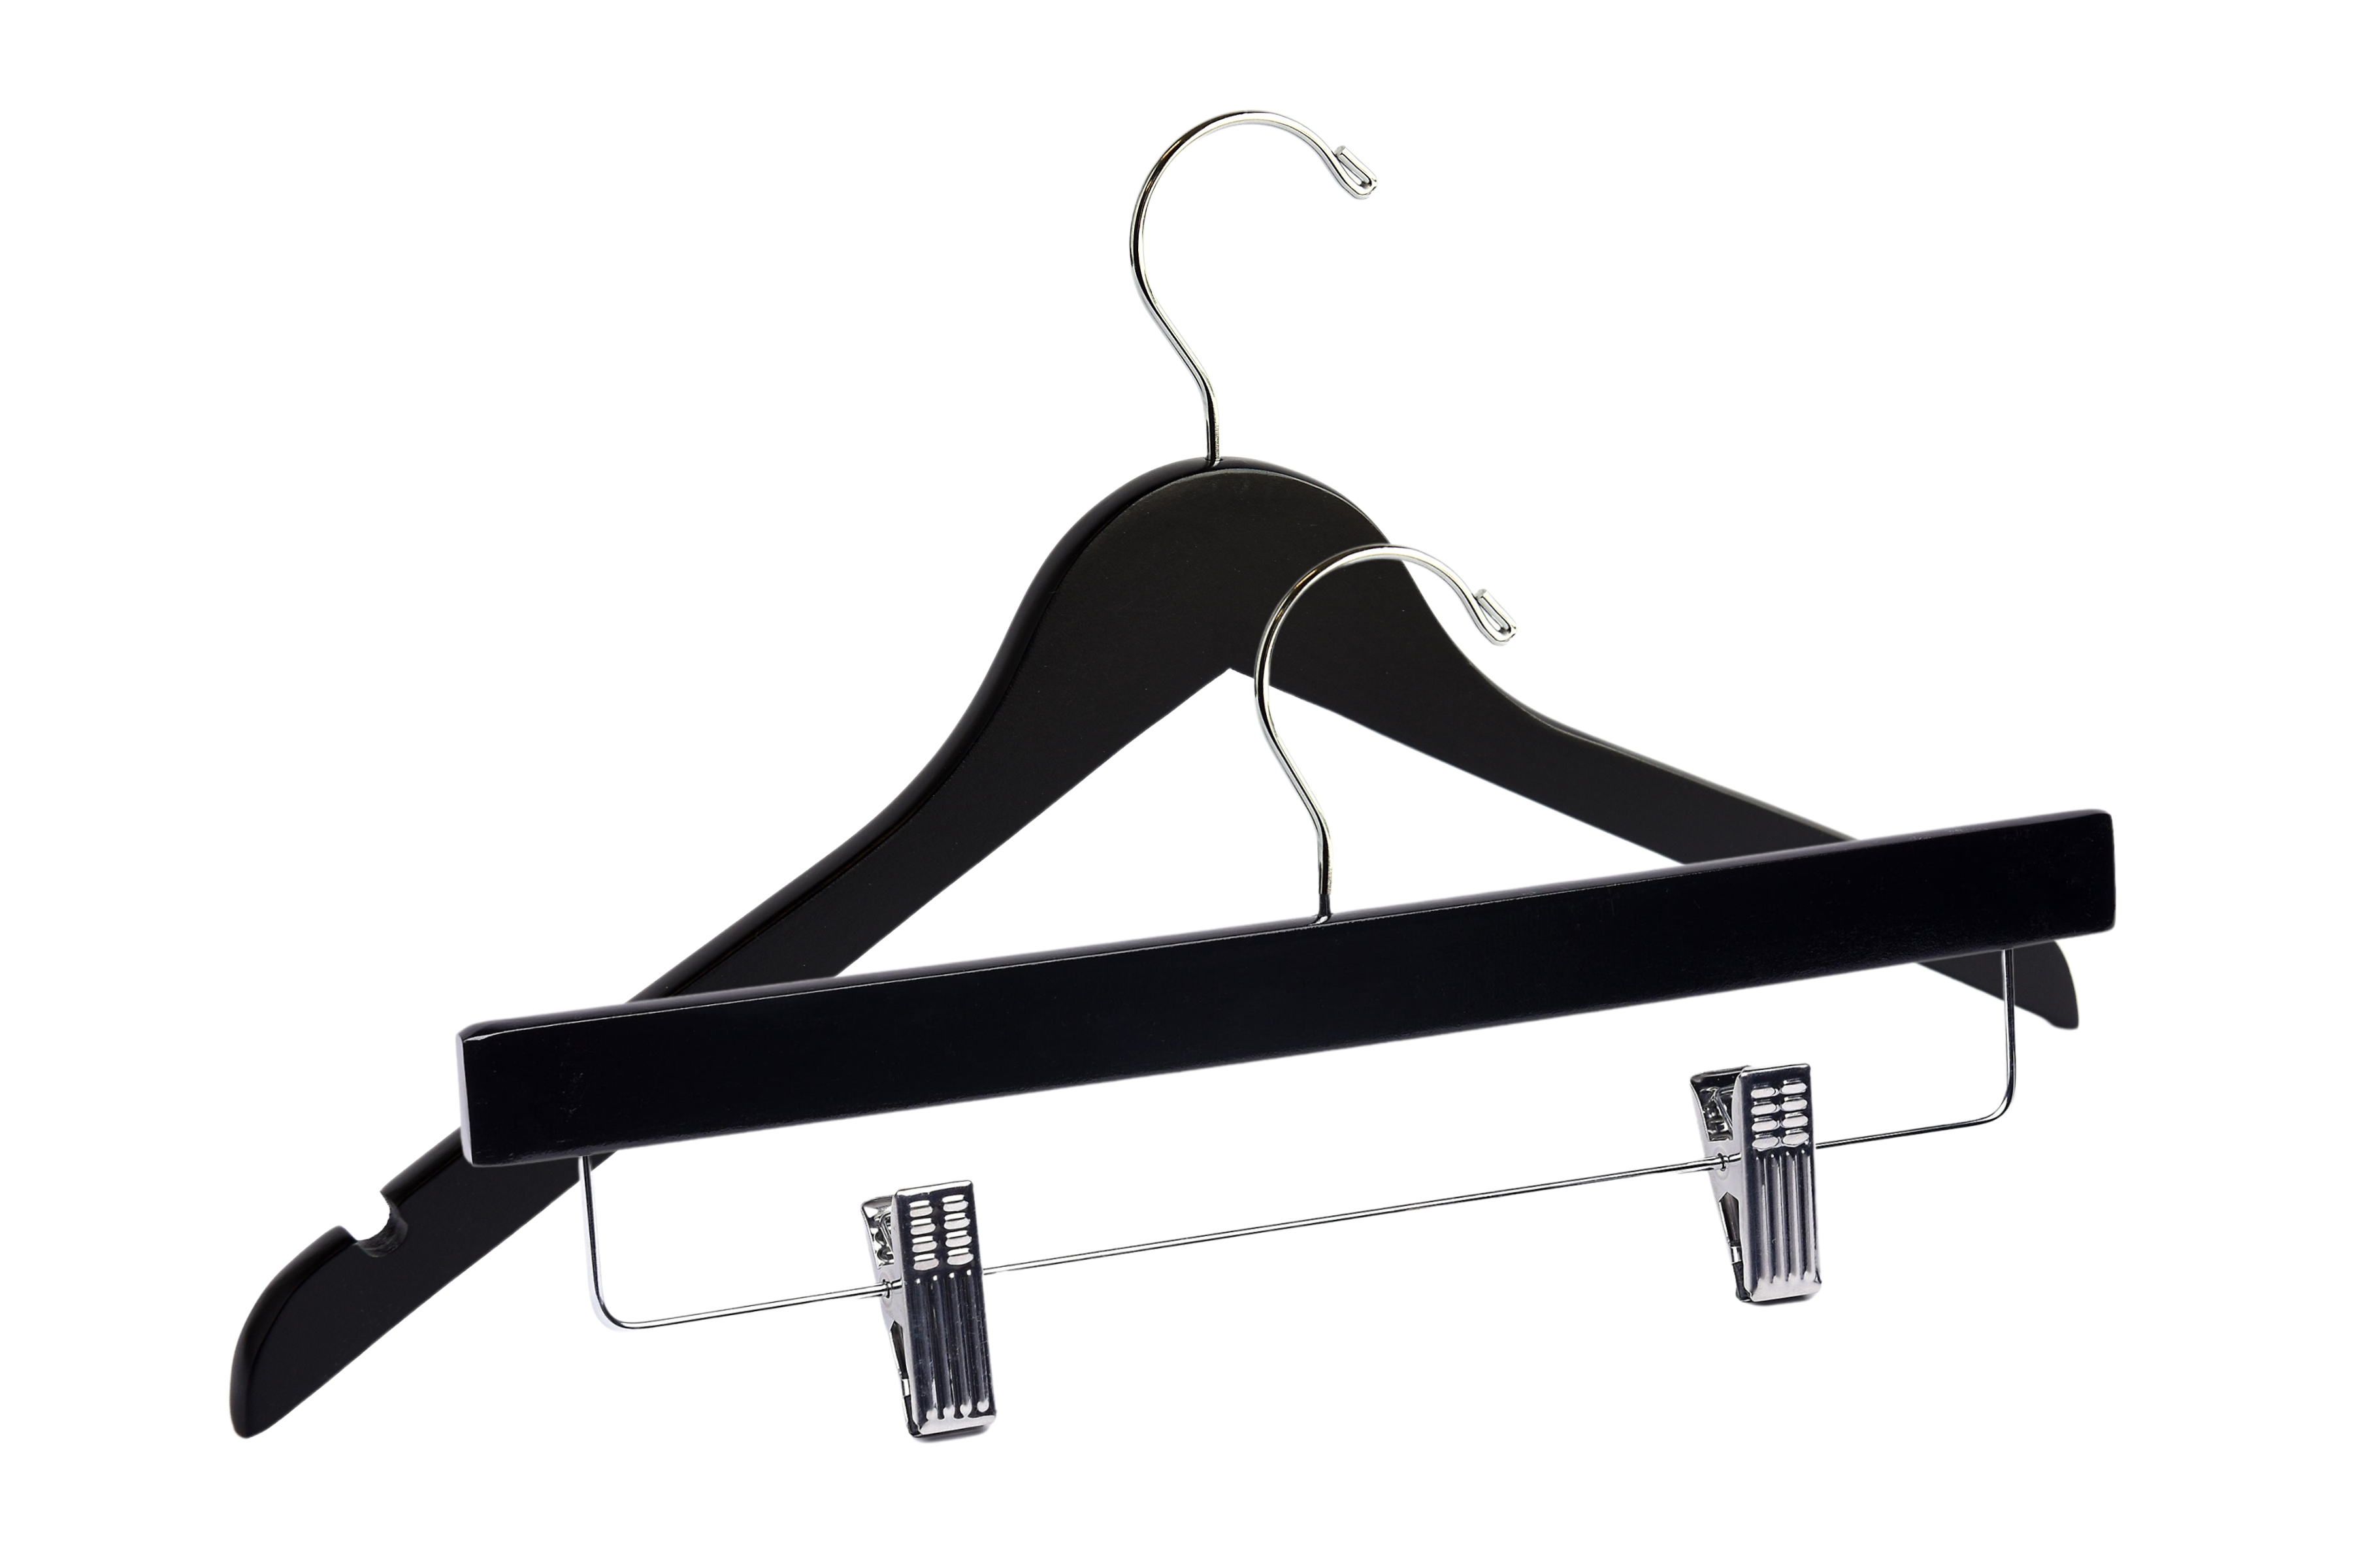 Matte Black Top & Bottom Wooden Hangers Mixed Pack